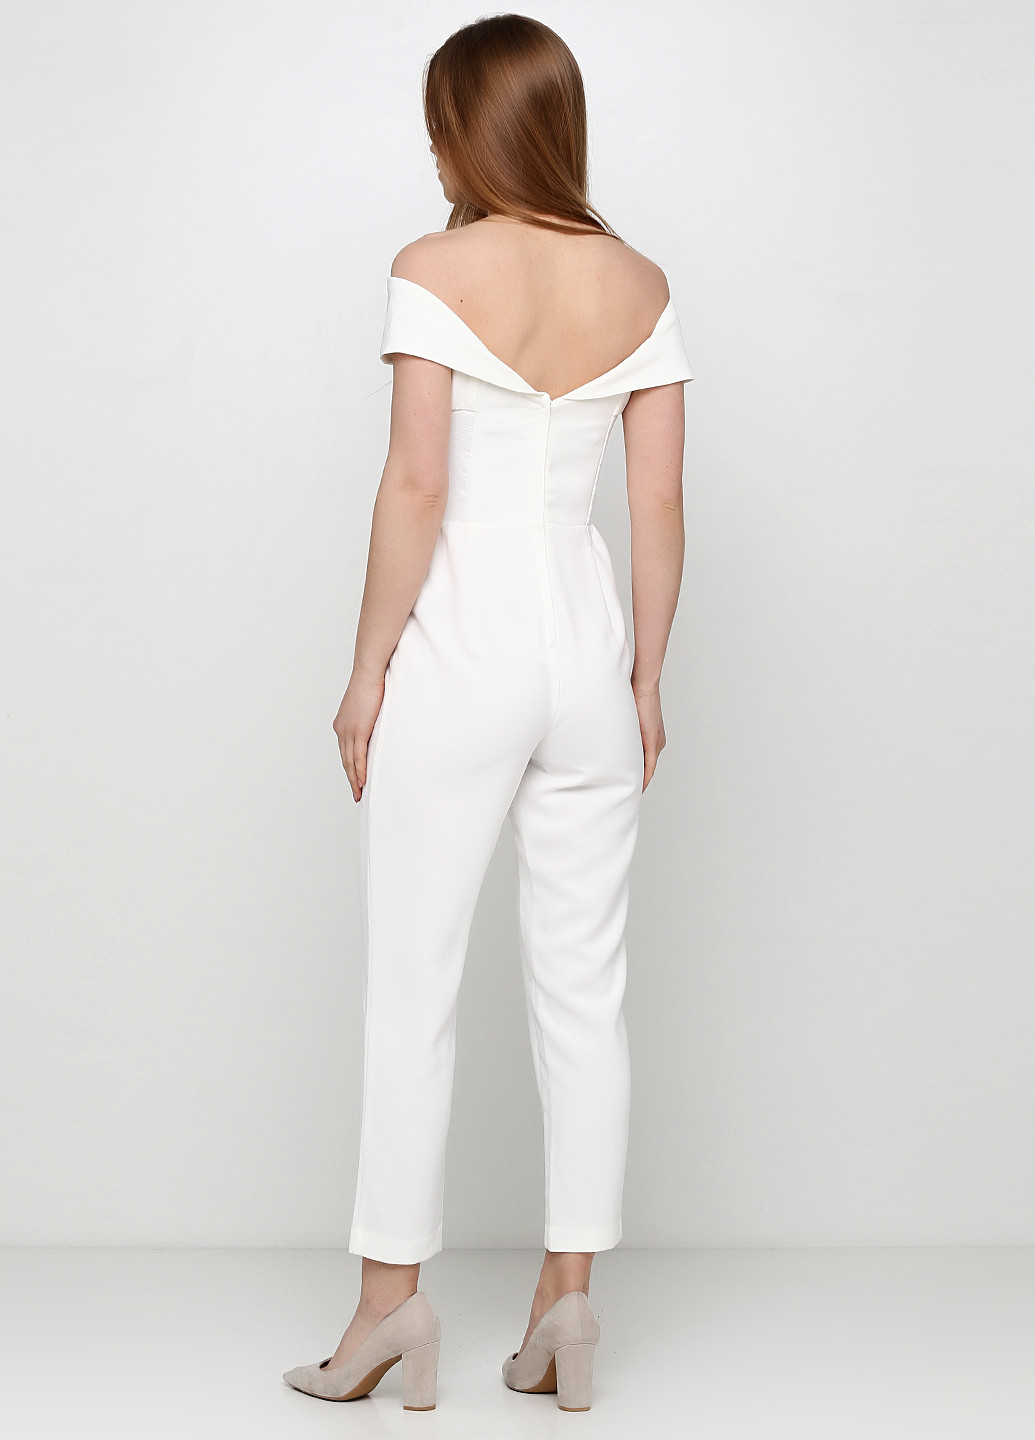 Комбинезон H&M комбинезон-брюки однотонный белый деловой полиэстер